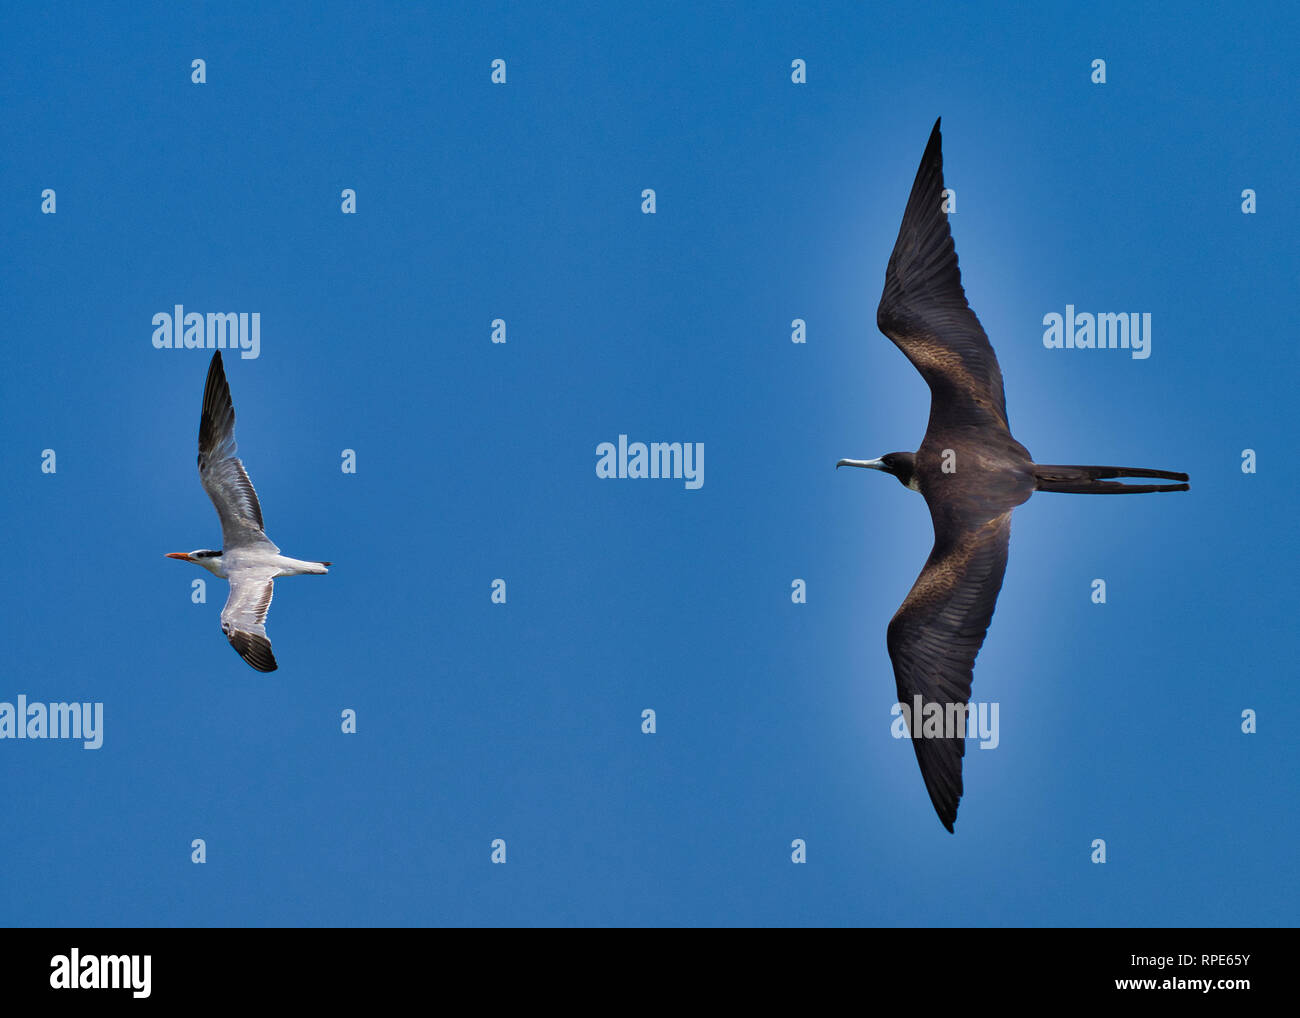 Prachtvolle Fregatte Vogel jagen einem tern und blauer Himmel Stockfoto